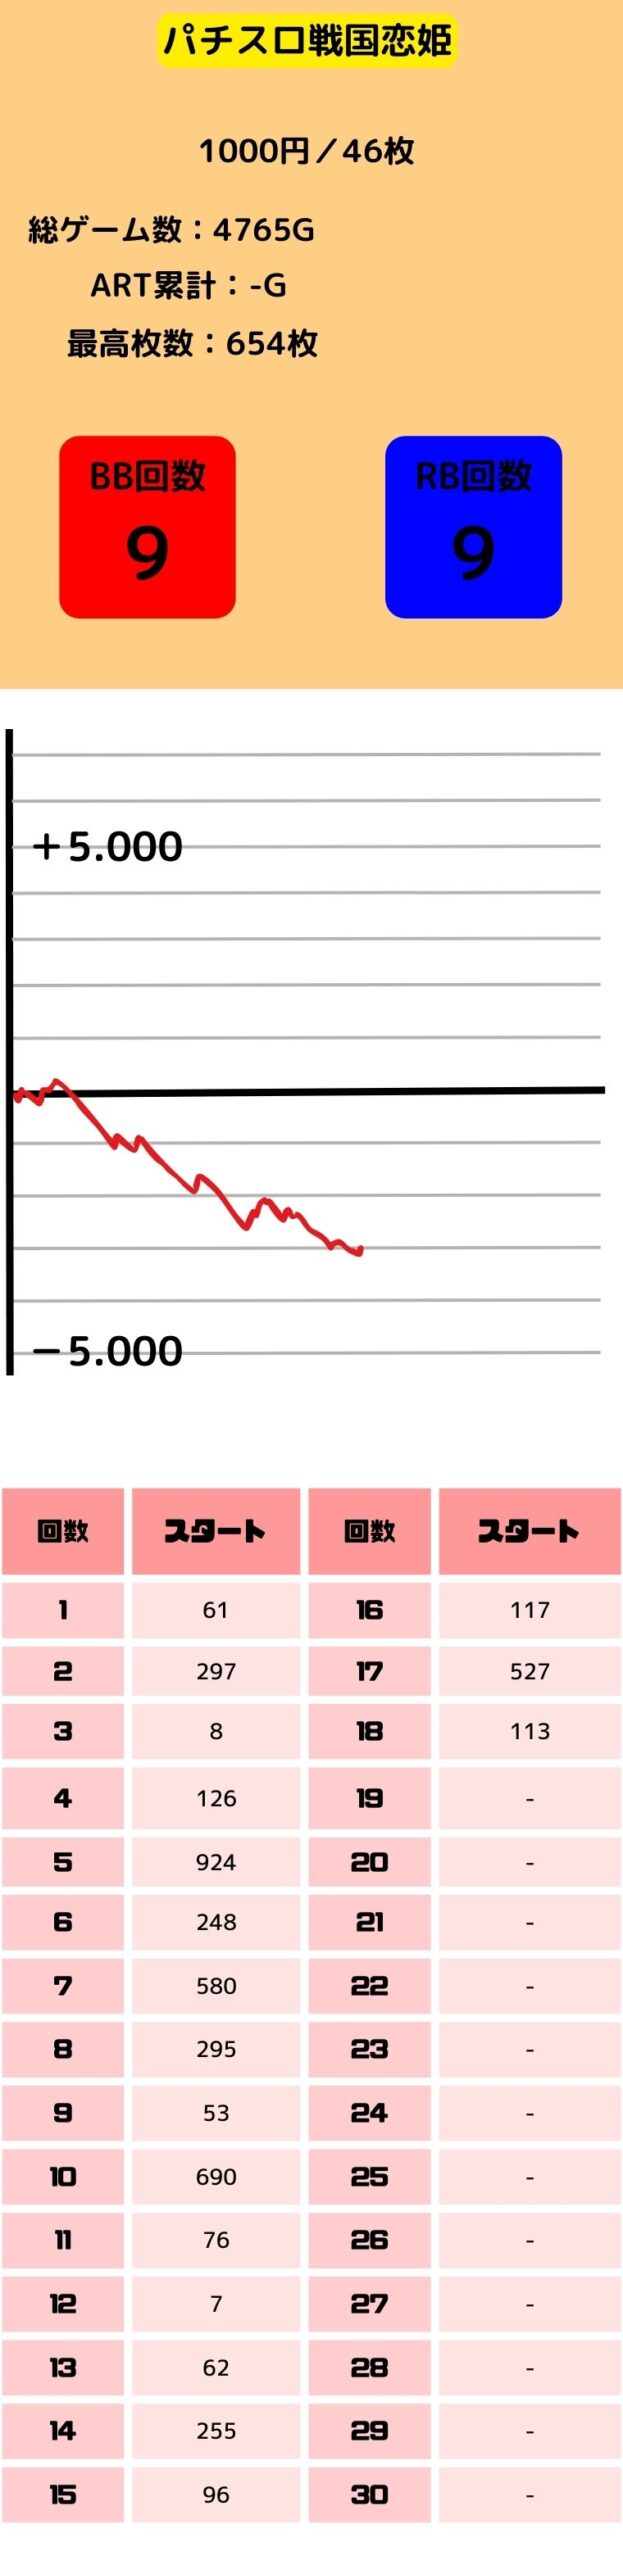 スロット-戦国恋姫の低設定1.2.3のグラフと初当たり挙動